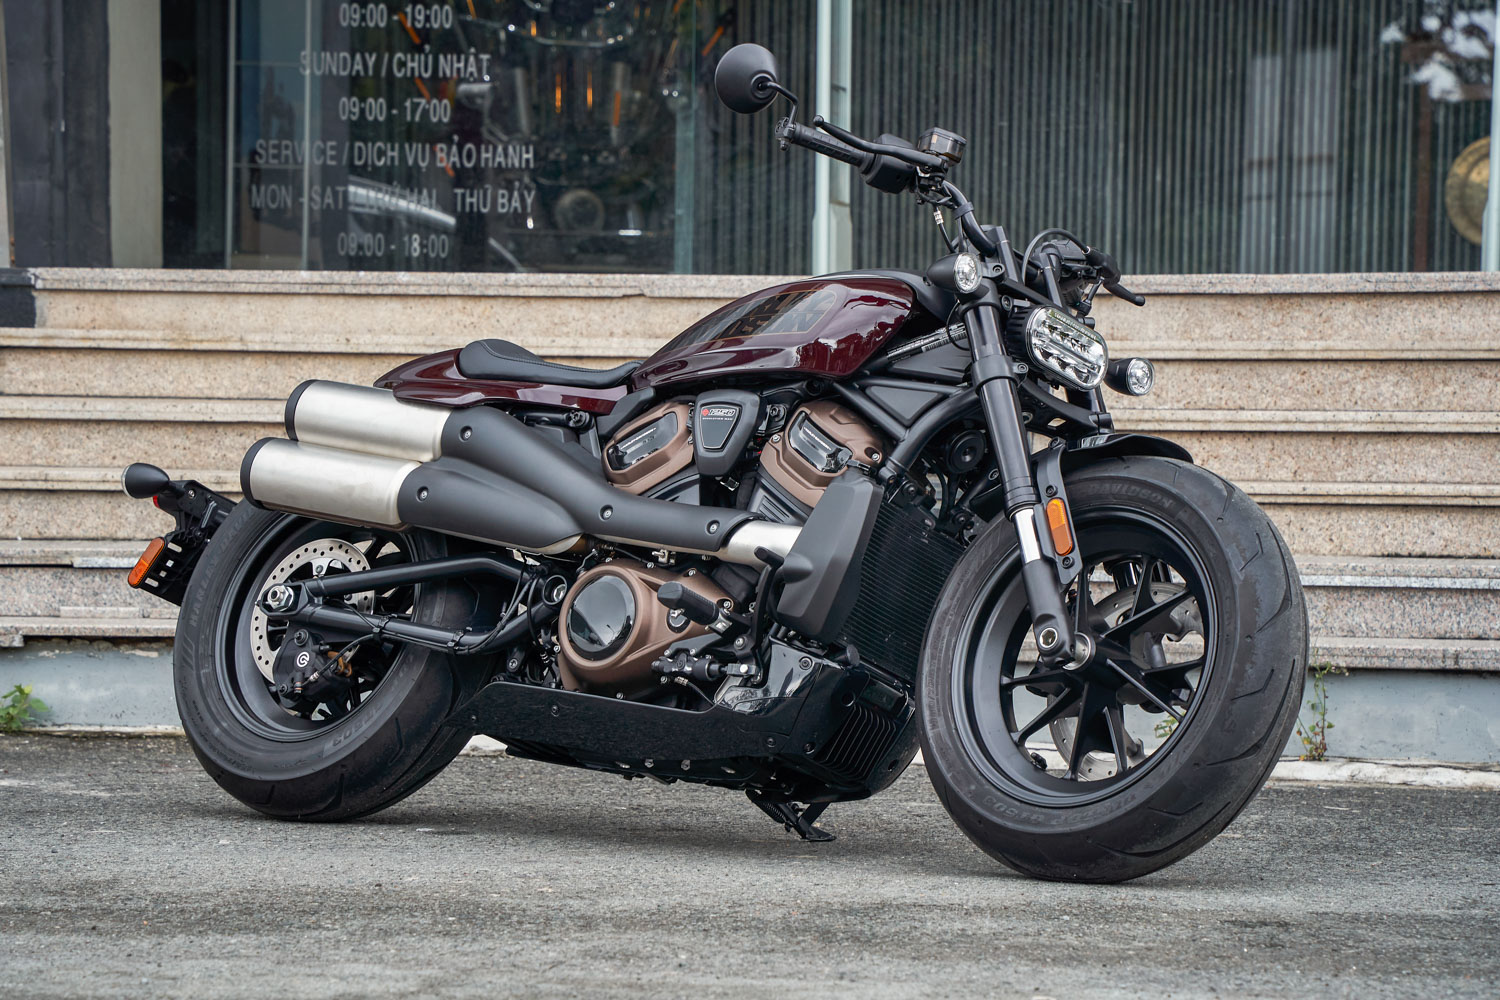 xe-moto-Harley-Davidson-Sportster-S-anh.JPG